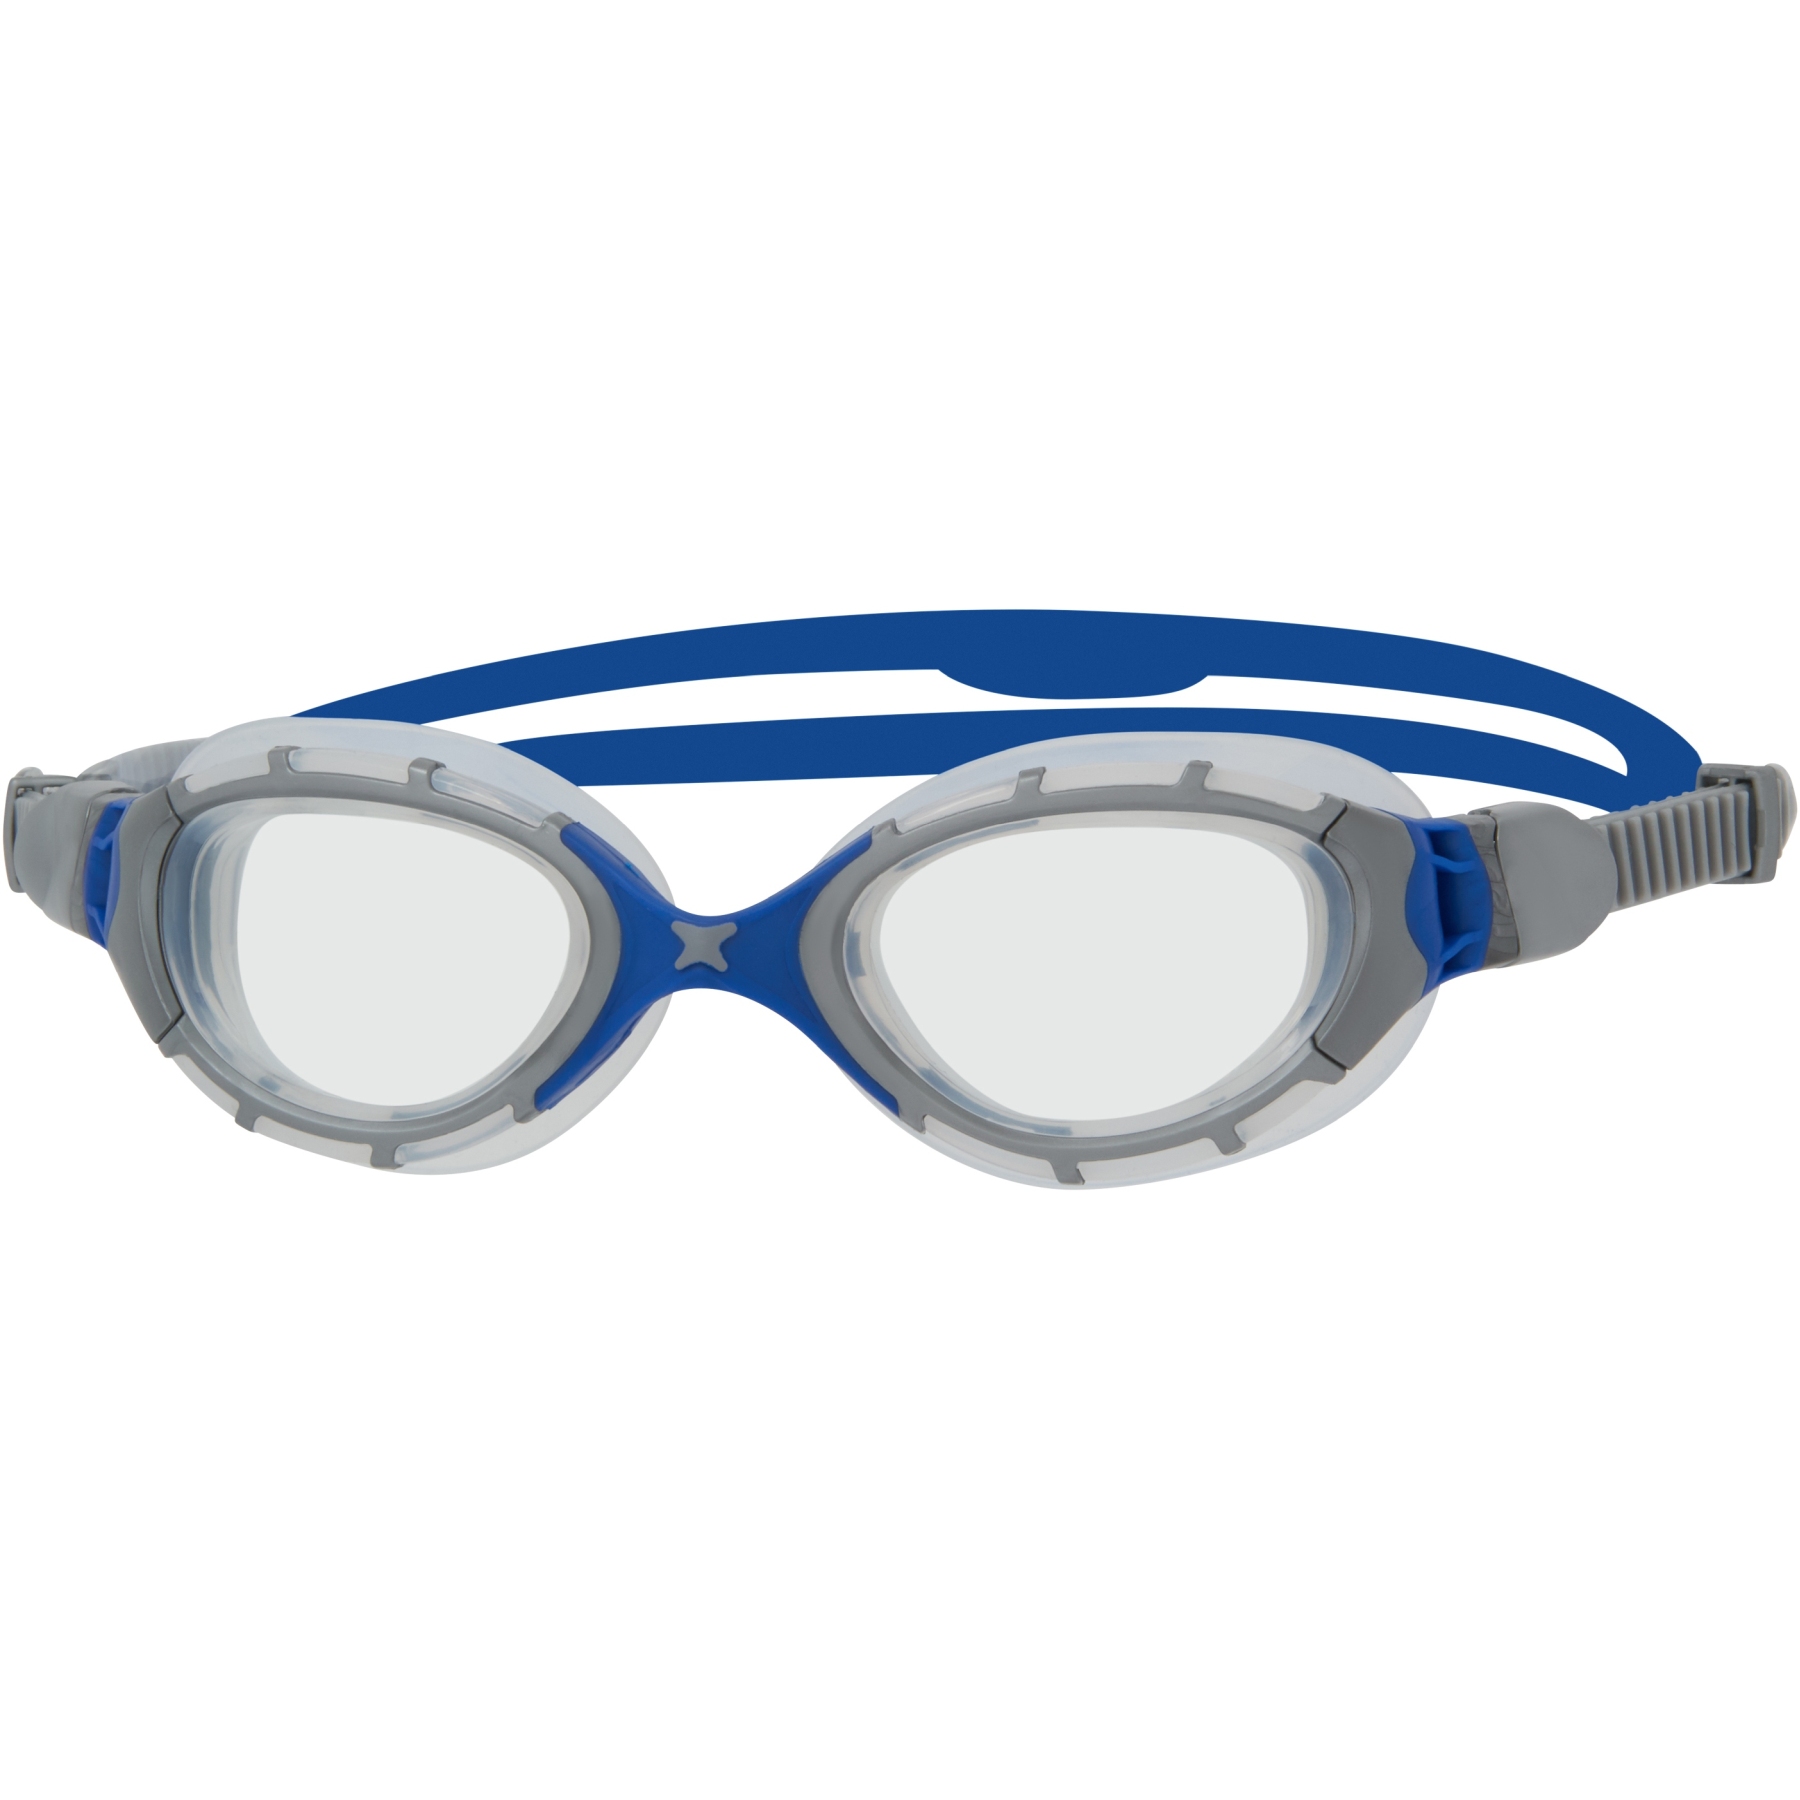 Picture of Zoggs Predator Flex Swimming Goggles - grey/blue/clear